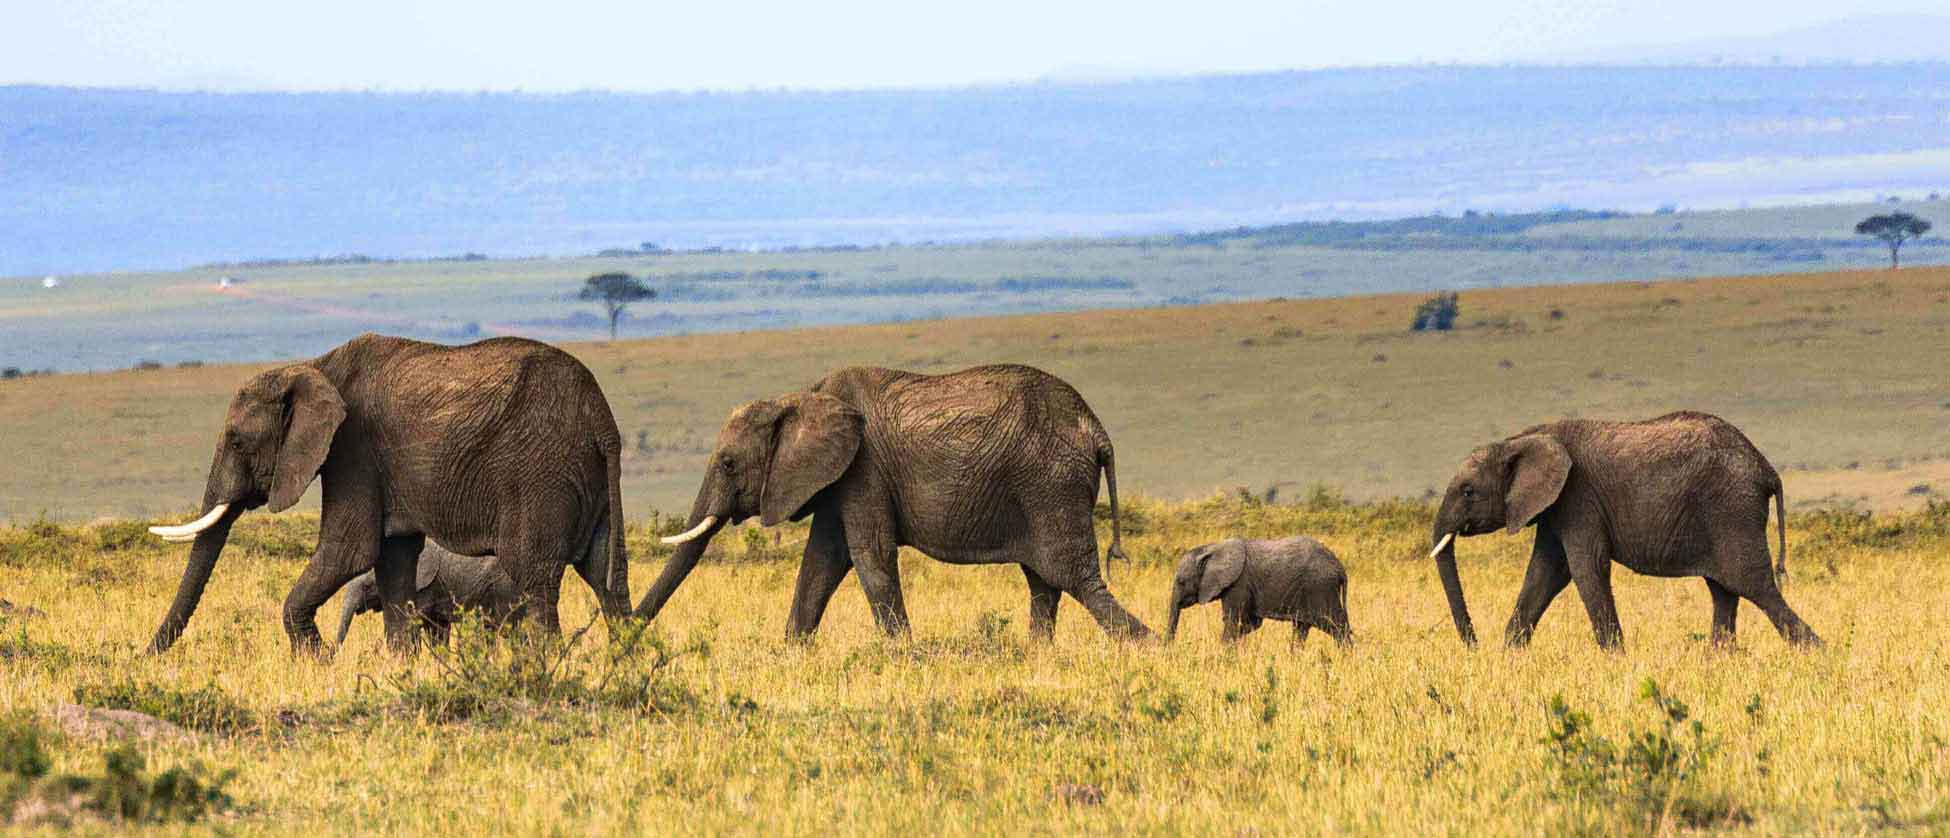 Small herd of elephants walking along grasslands